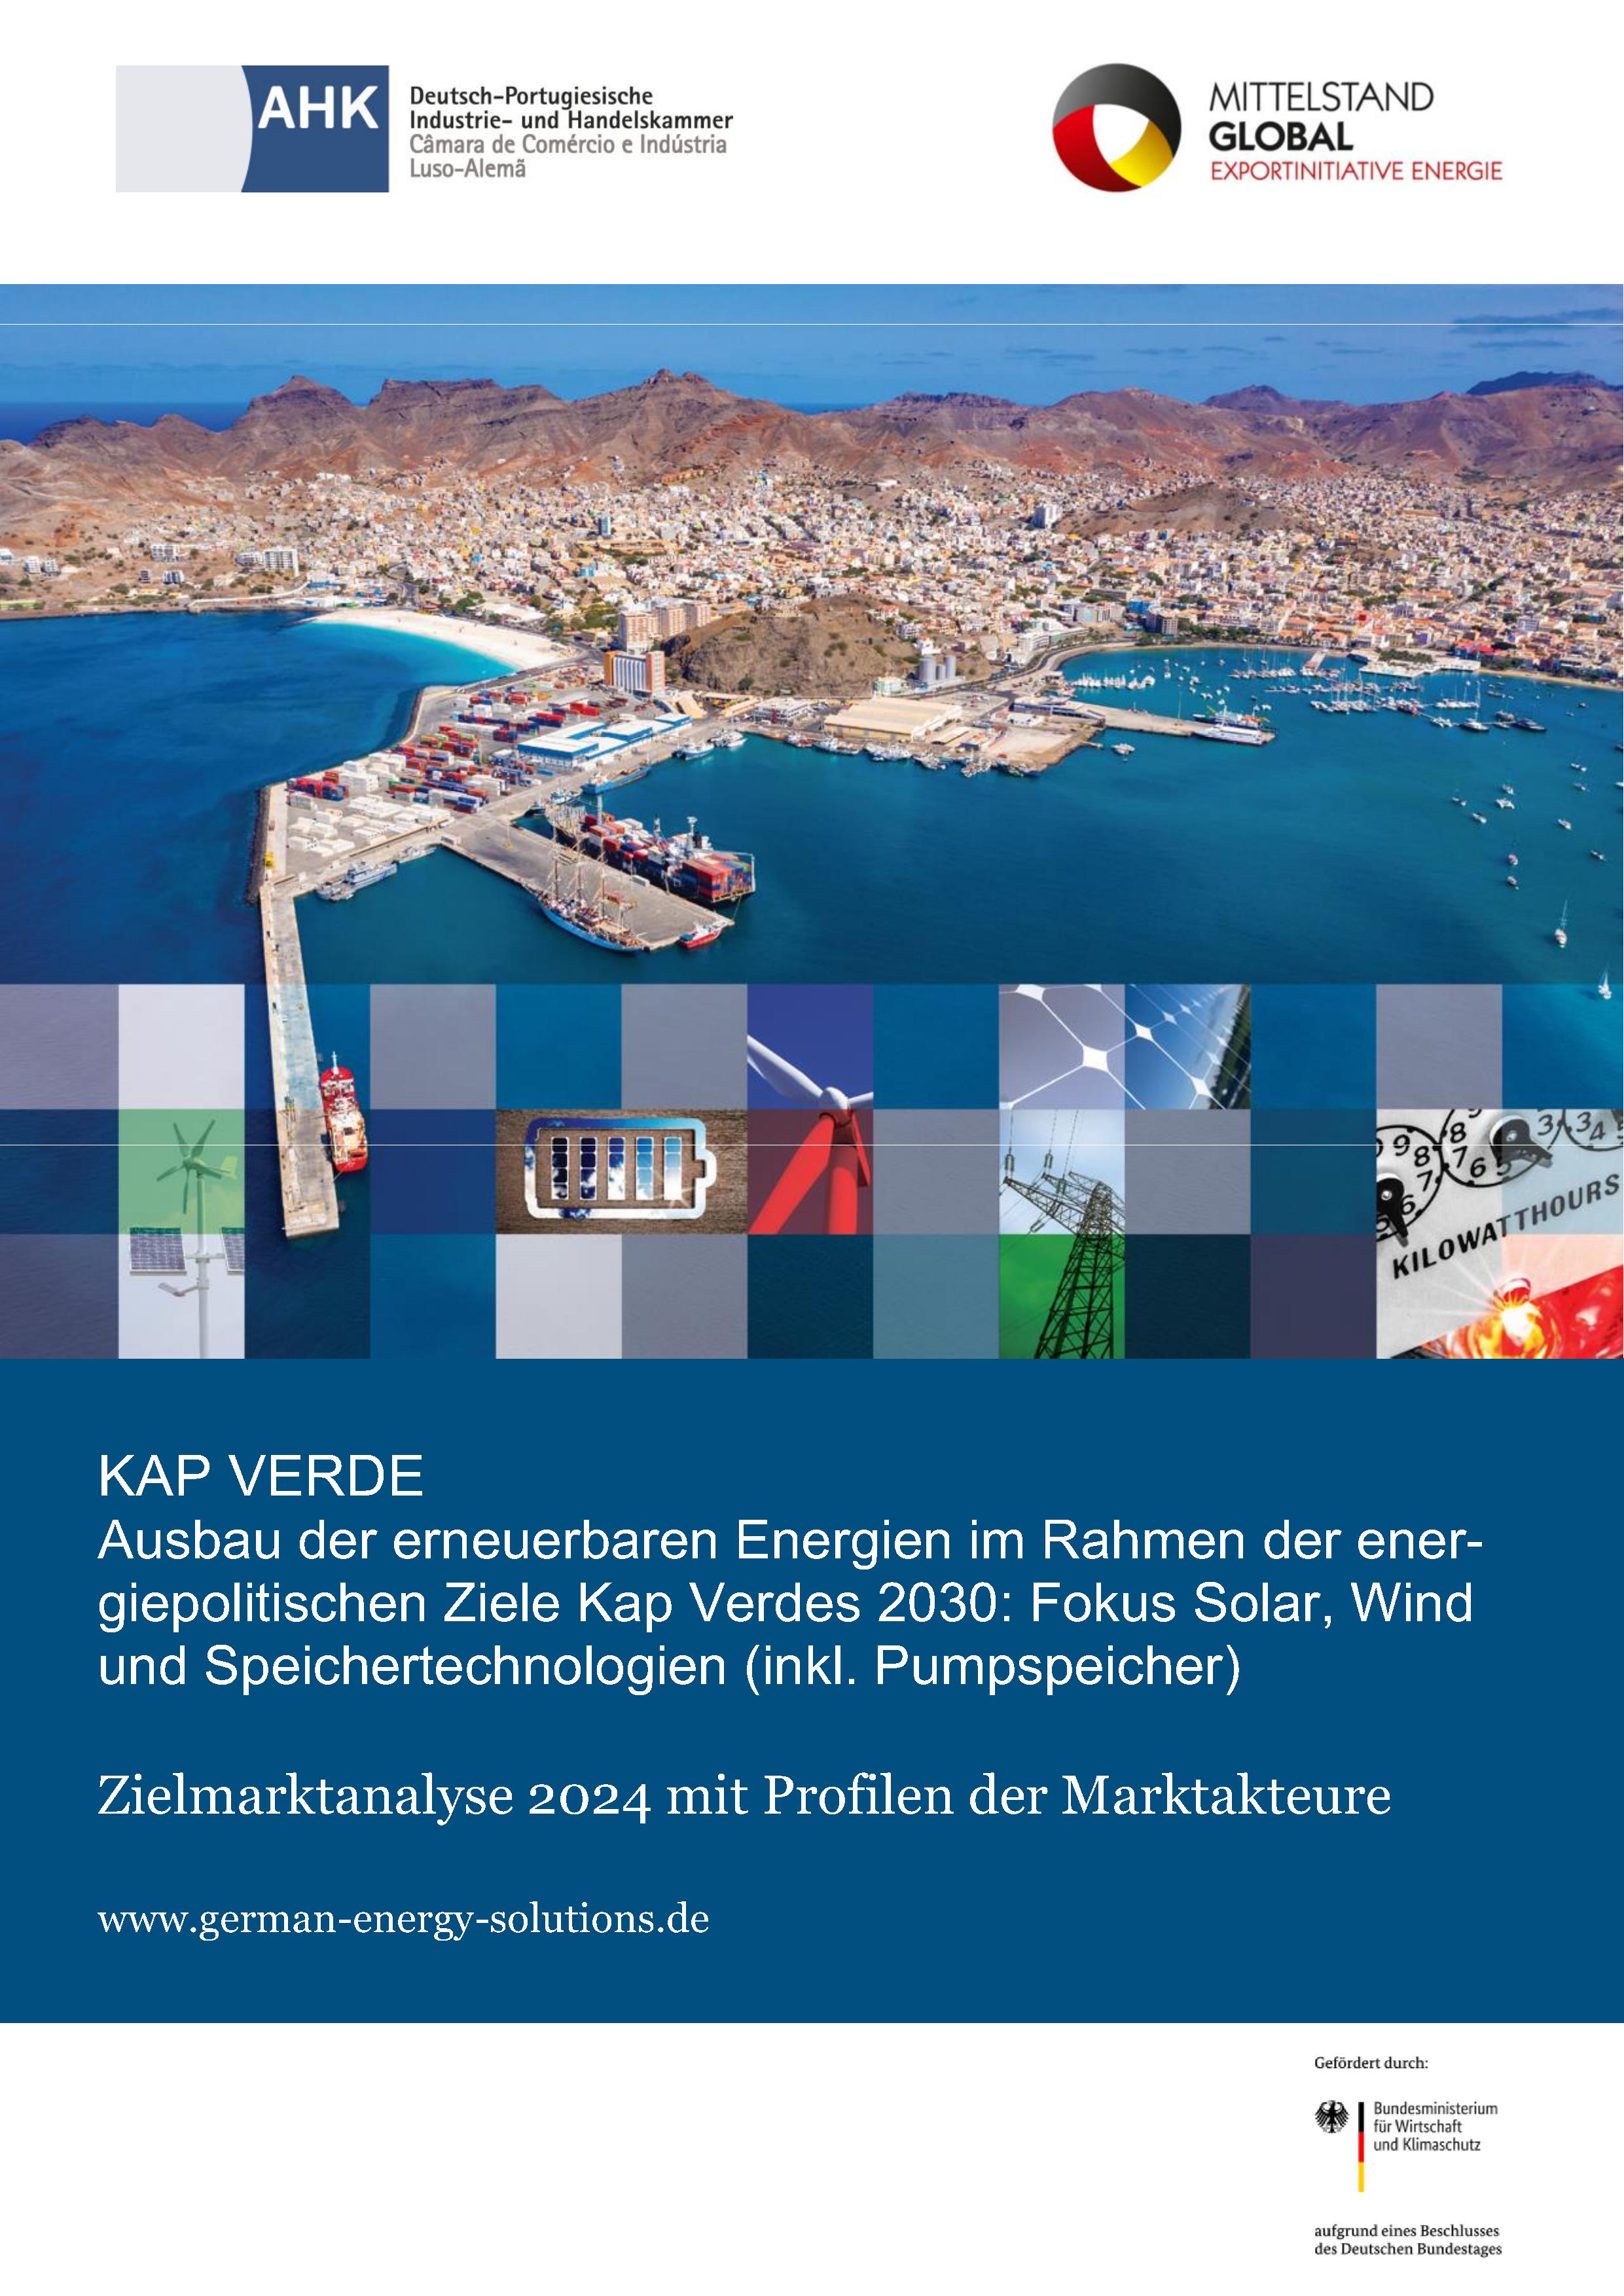 Kap Verde: Erneuerbare Energien mit Fokus auf Solar, Wind und Speichertechnologien (inkl. Pumpspeicher)